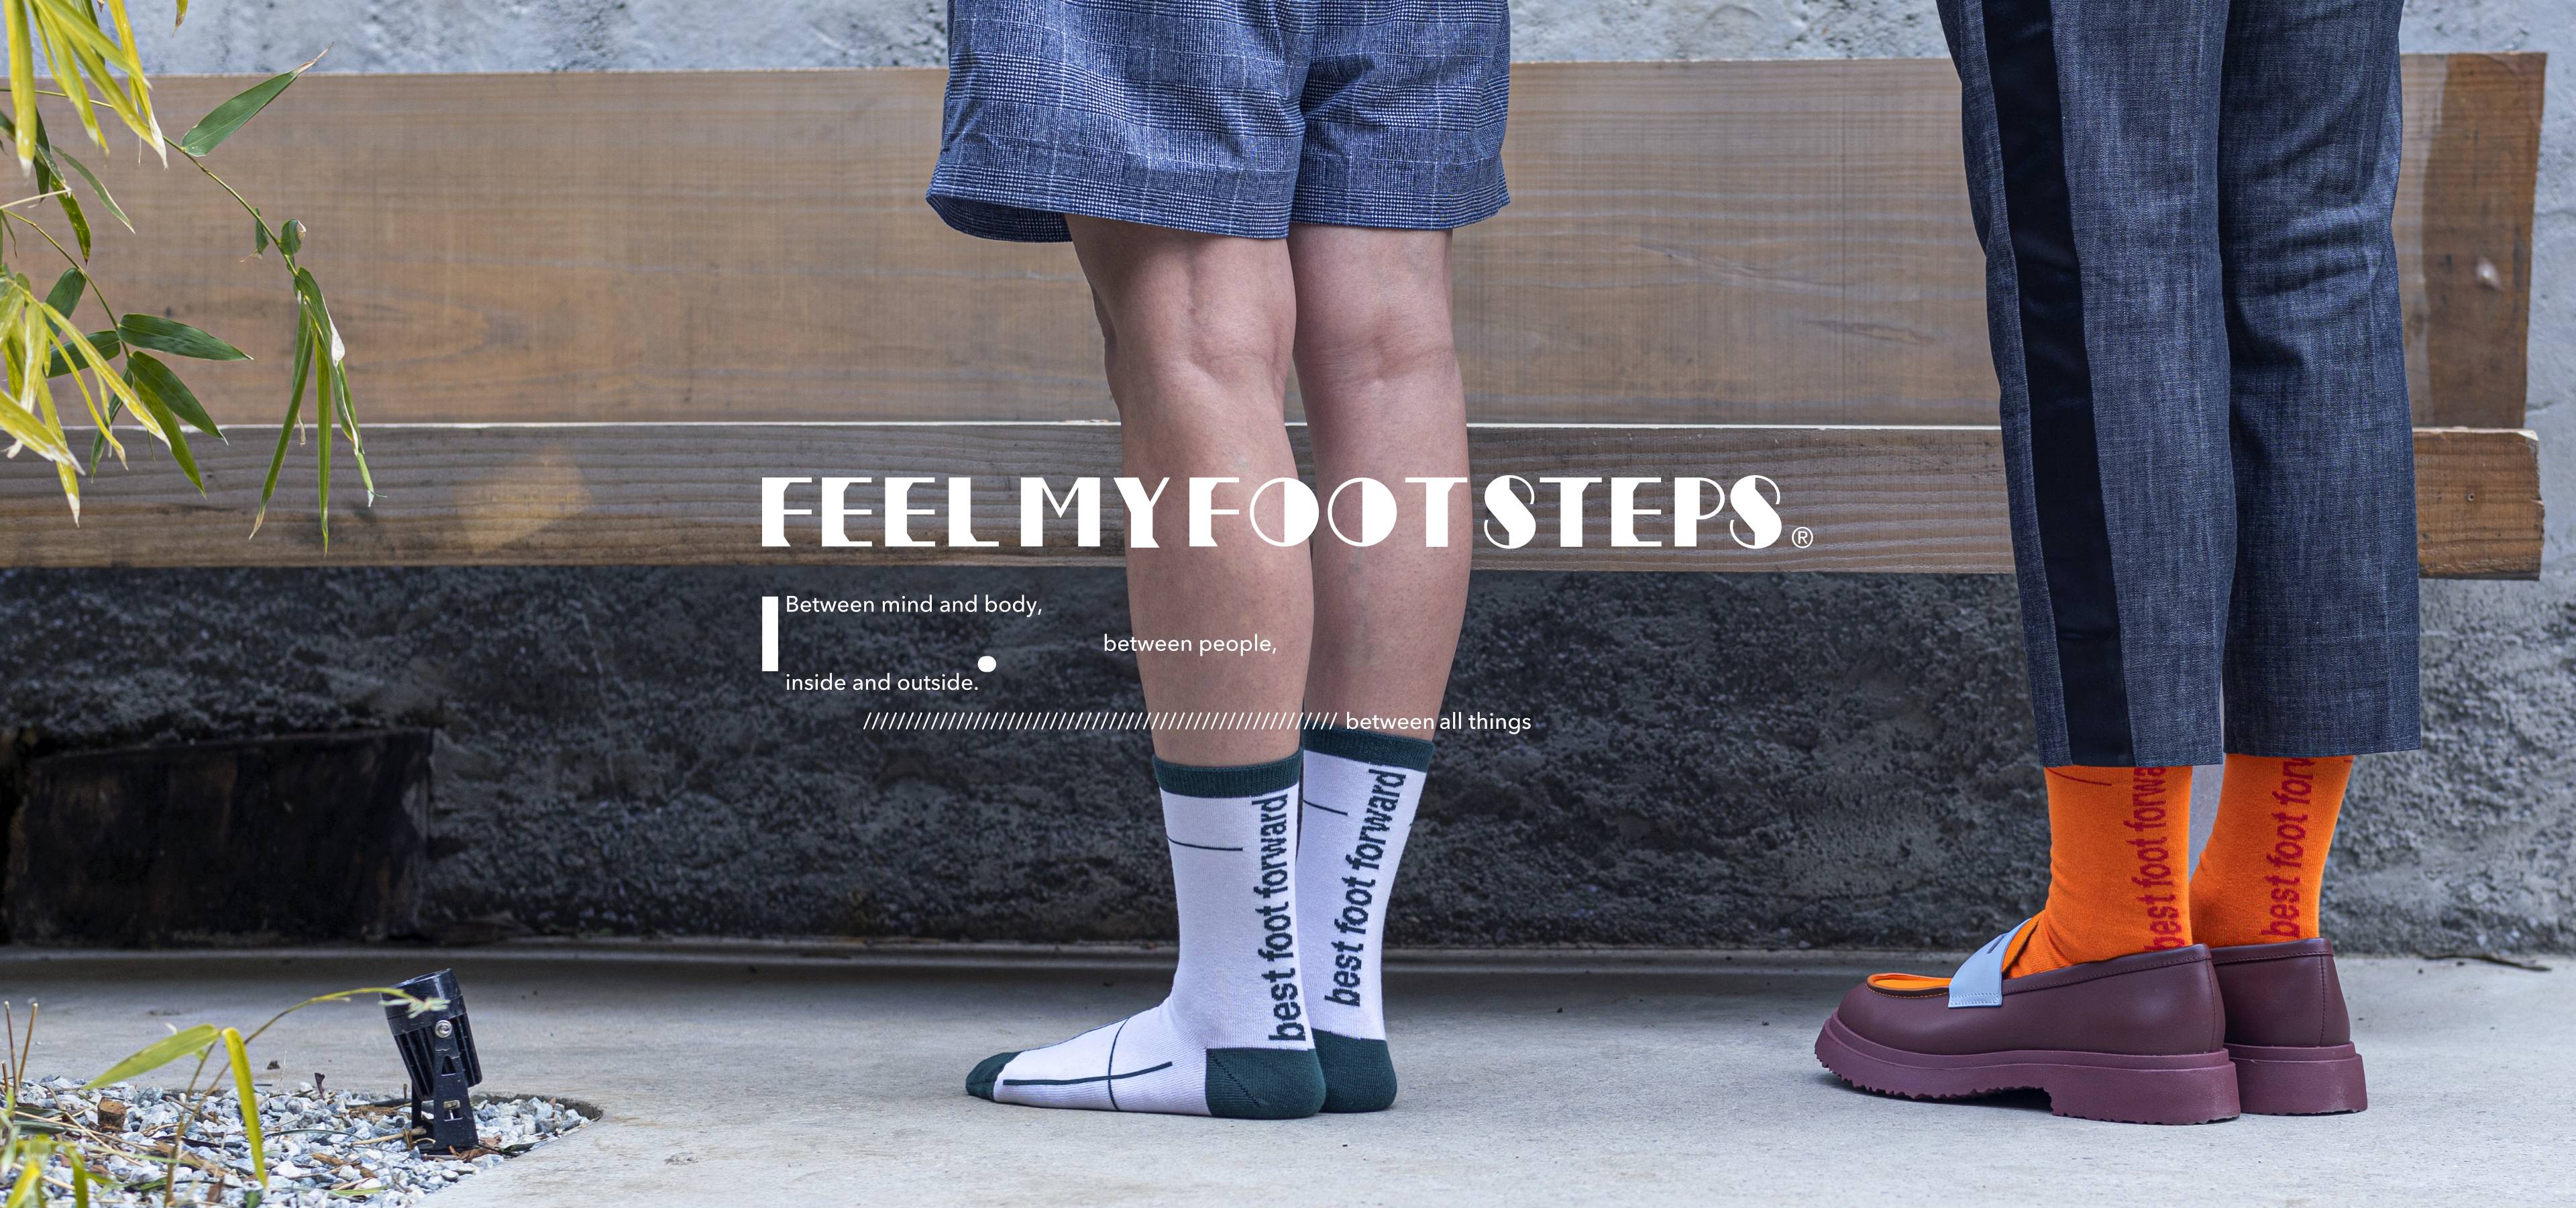 FEEL MY FOOT STEPSは「アート」と「ジェンダーレスな価値観」をソックスというプロダクトを通じて世の中に広めていく、新しい靴下ブランドです。